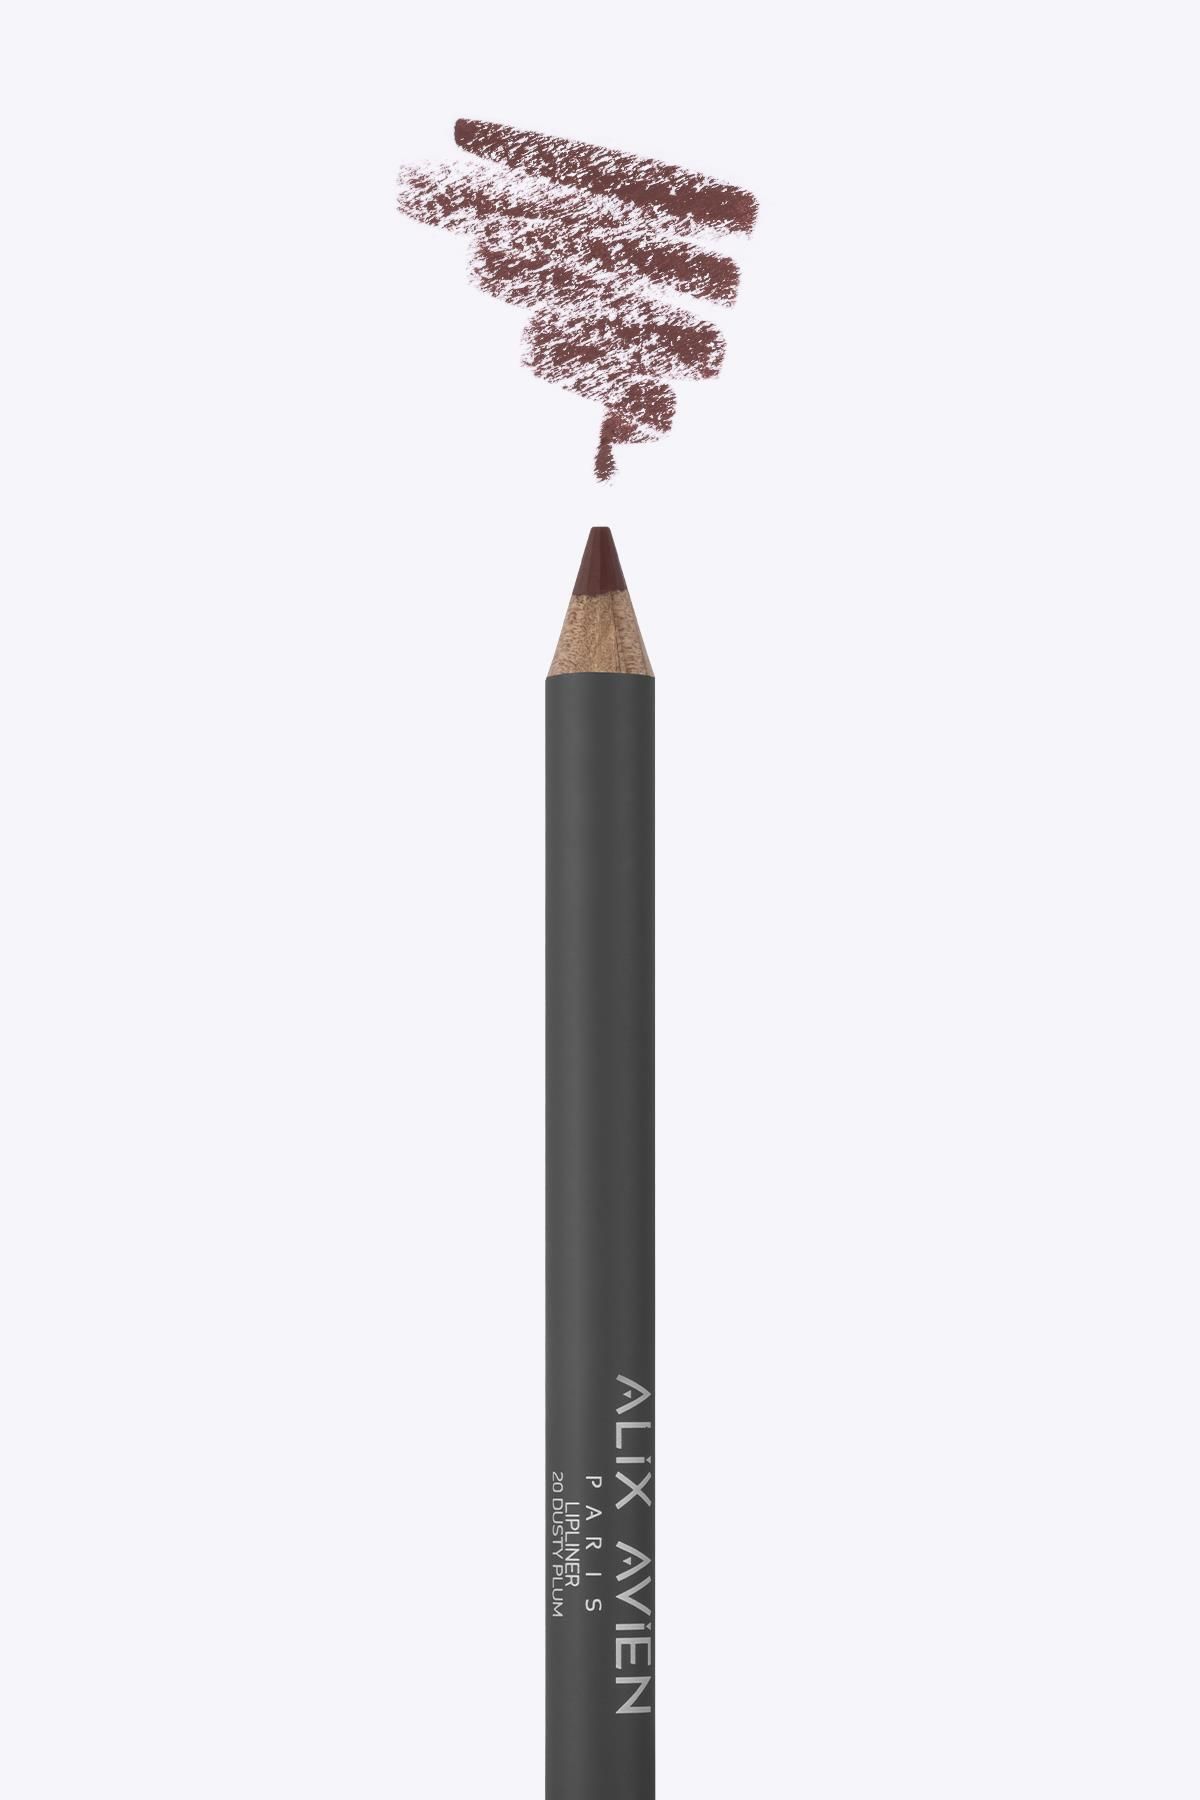 Alix Avien Dudak Kalemi Lipliner Pencil 20 Dusty Plum - Dağılma Yapmayan 6 Saate Kadar Kalıcı Etki